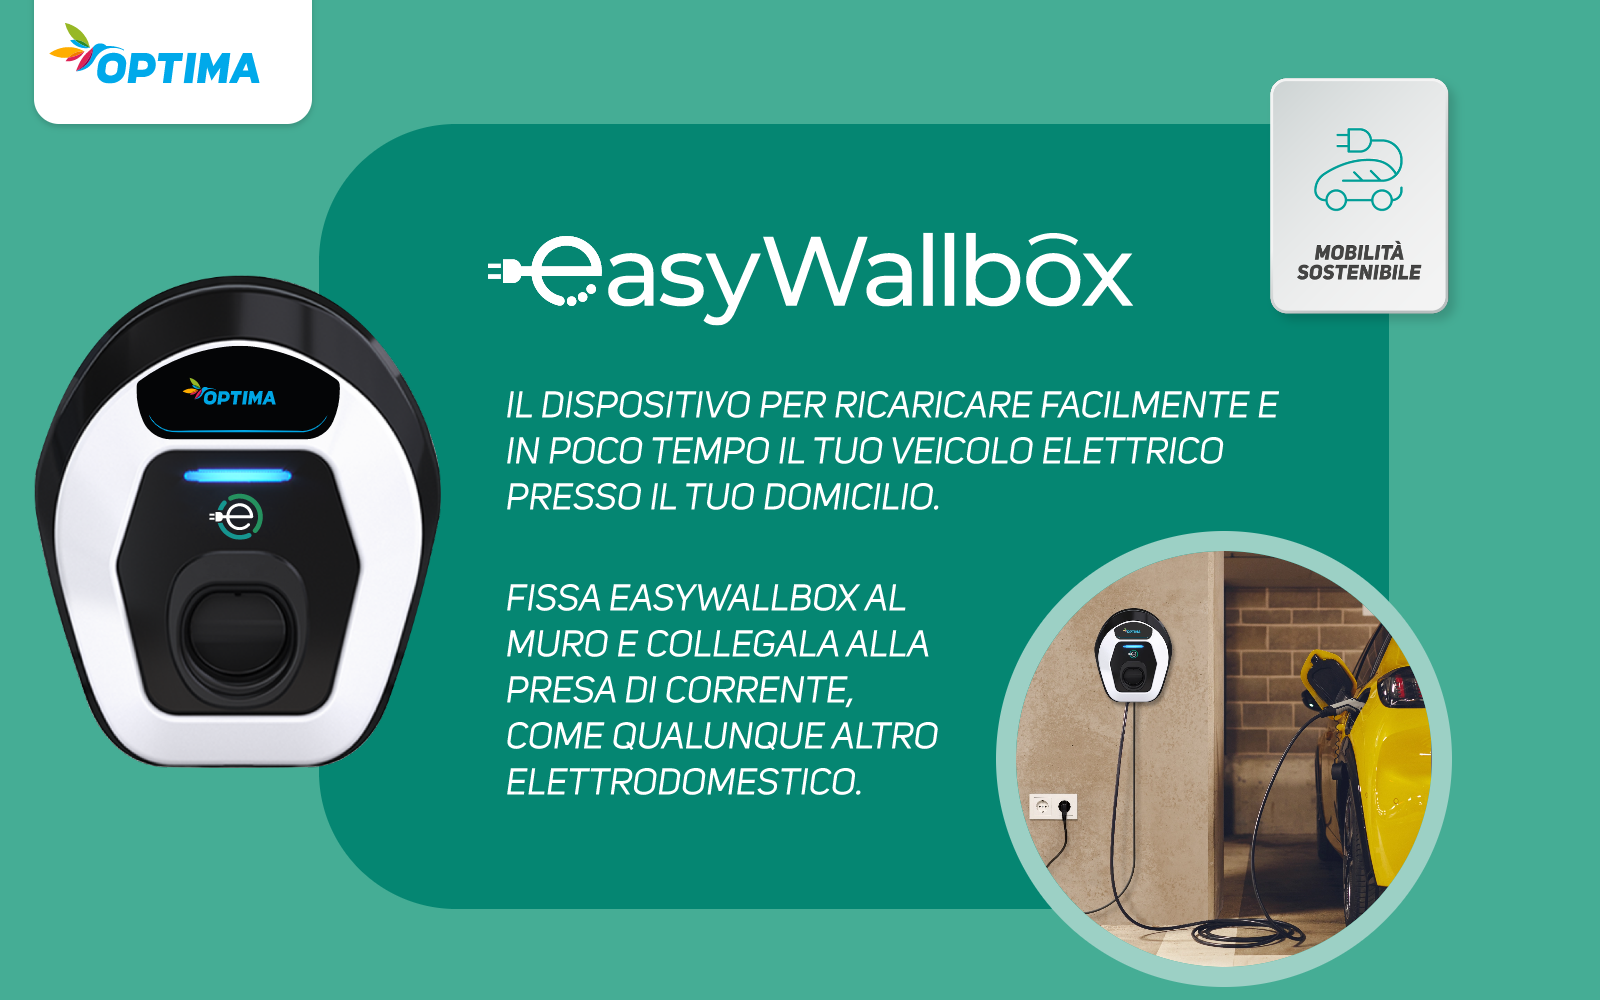 EasyWallbox Il dispositivo per ricaricare facilmente e in poco tempo il tuo veicolo elettrico presso il tuo domicilio. Fissa EasyWallbox al muro e collegala alla presa di corrente, come qualunque altro elettrodomestico.